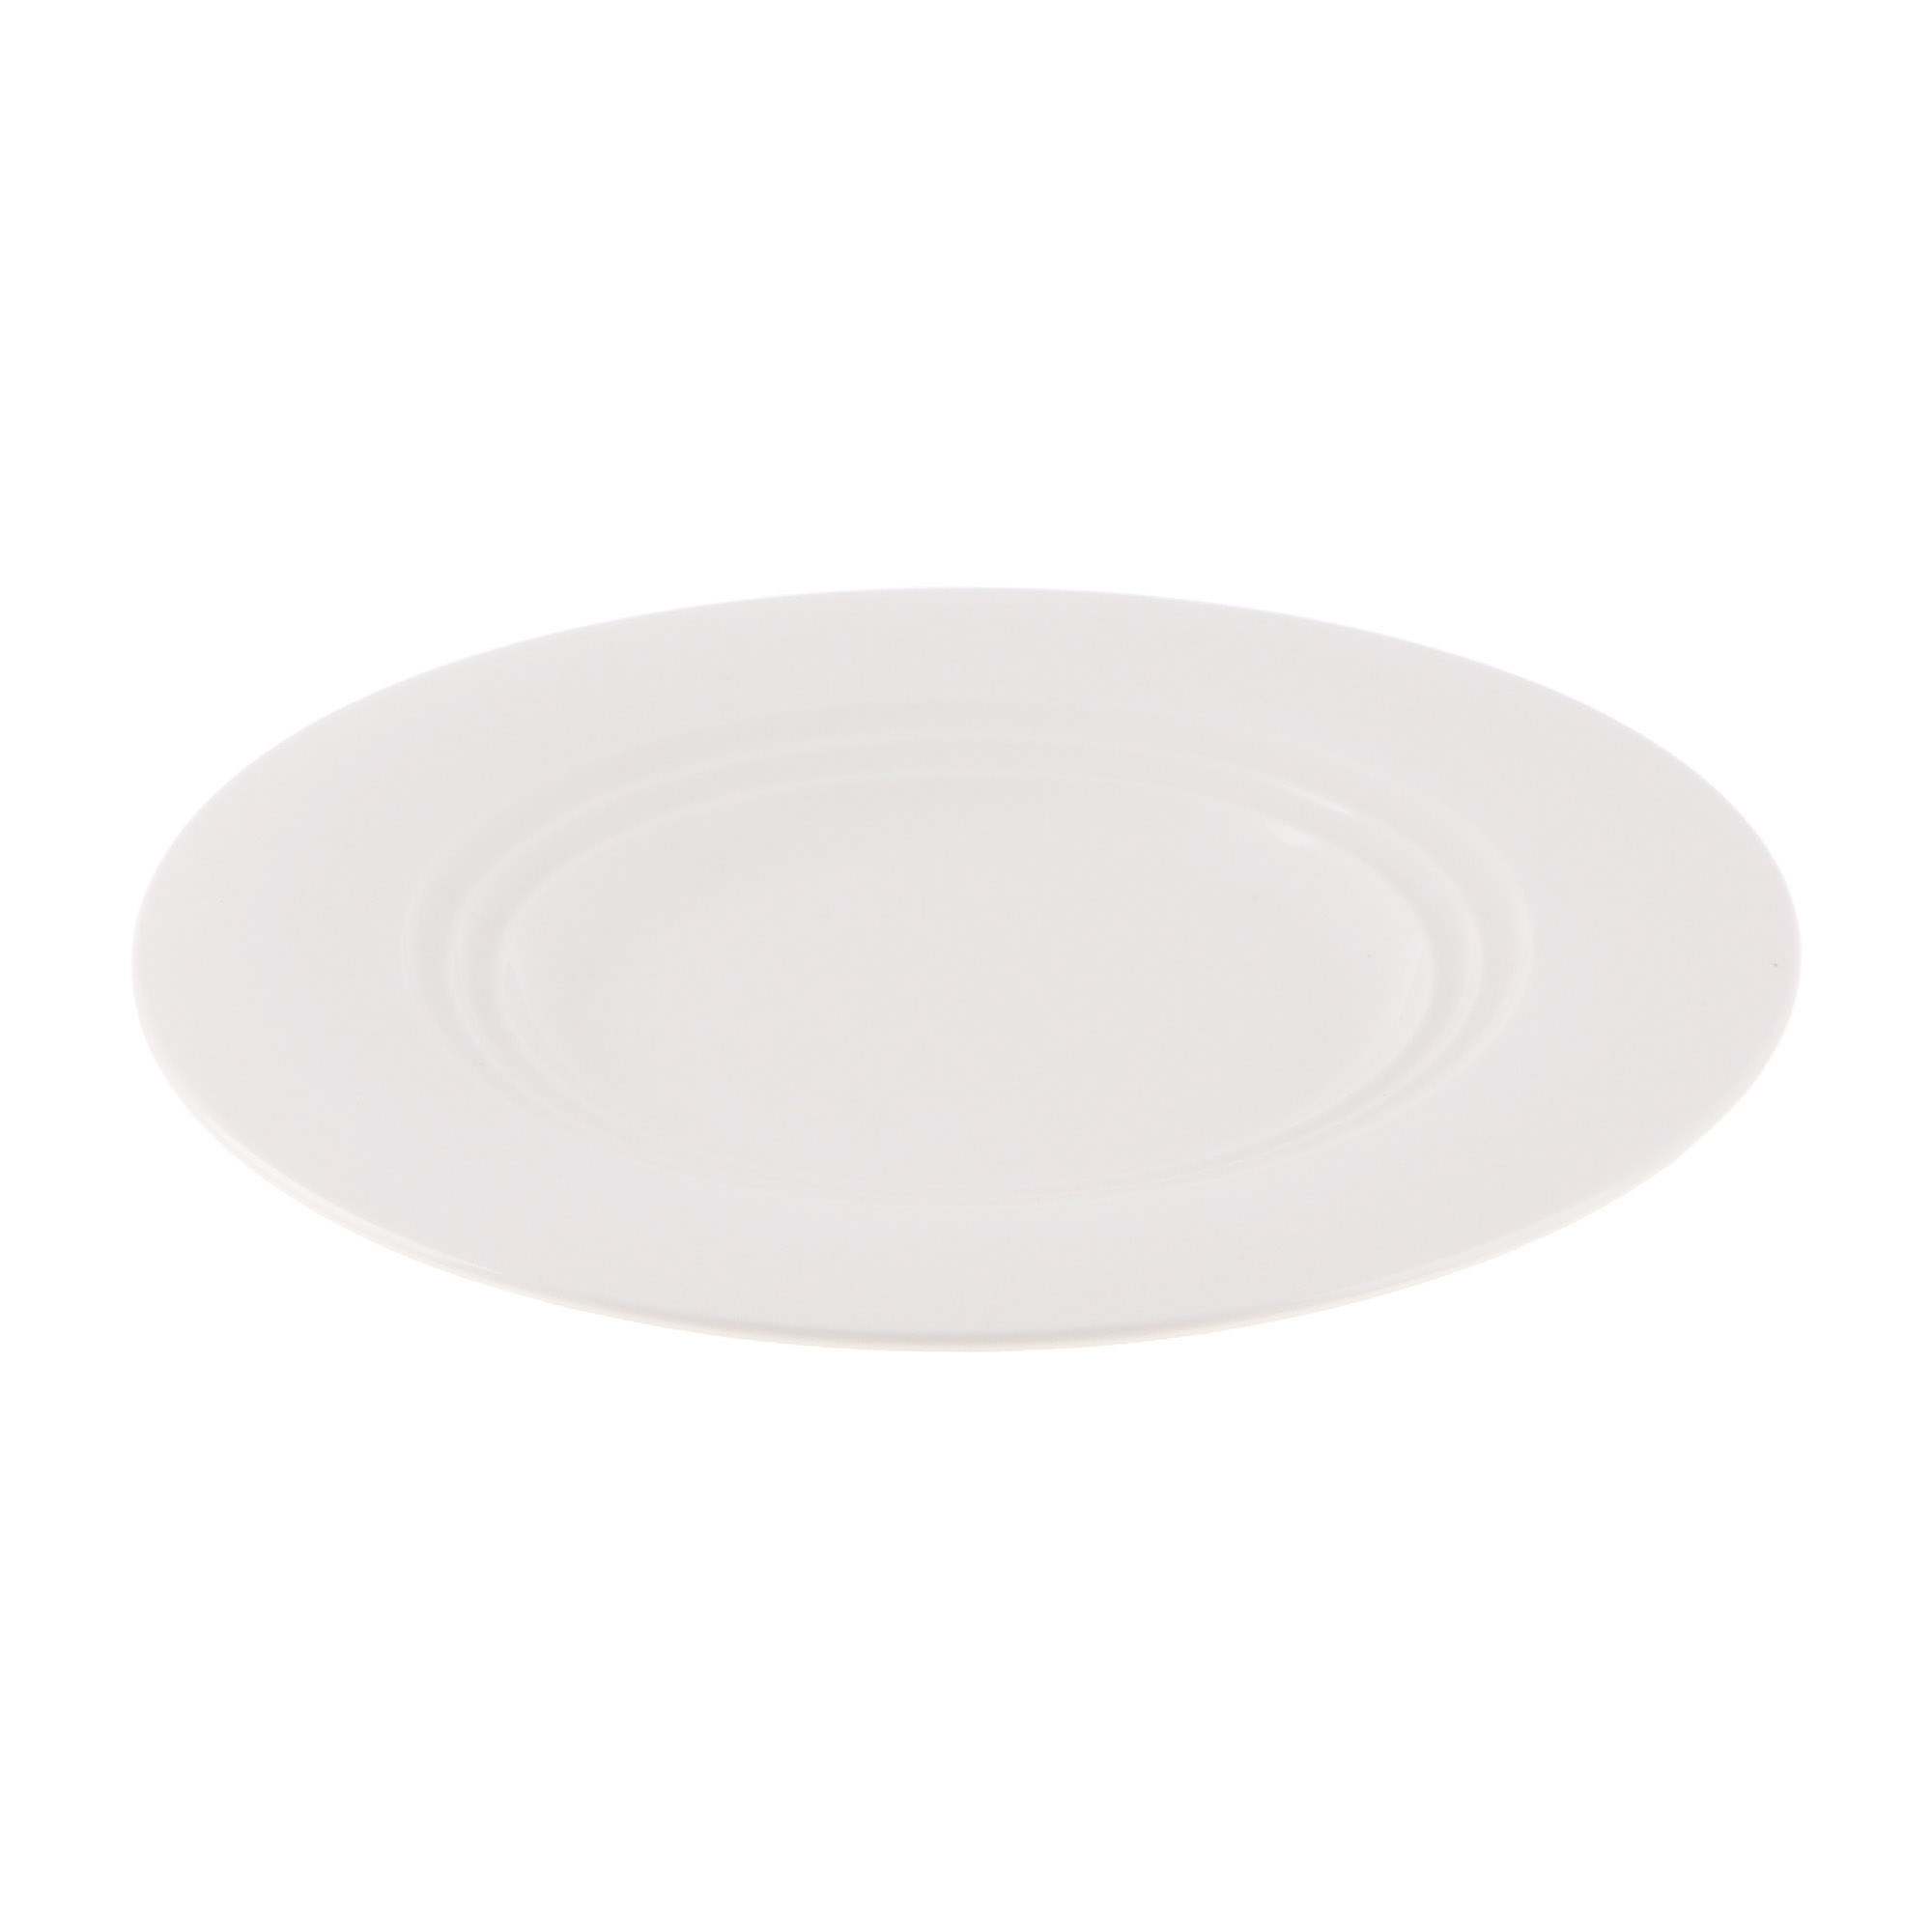 Тарелка Cameo Concentrics фарфор 21 см тарелка cameo imperial white d26 см 210 101